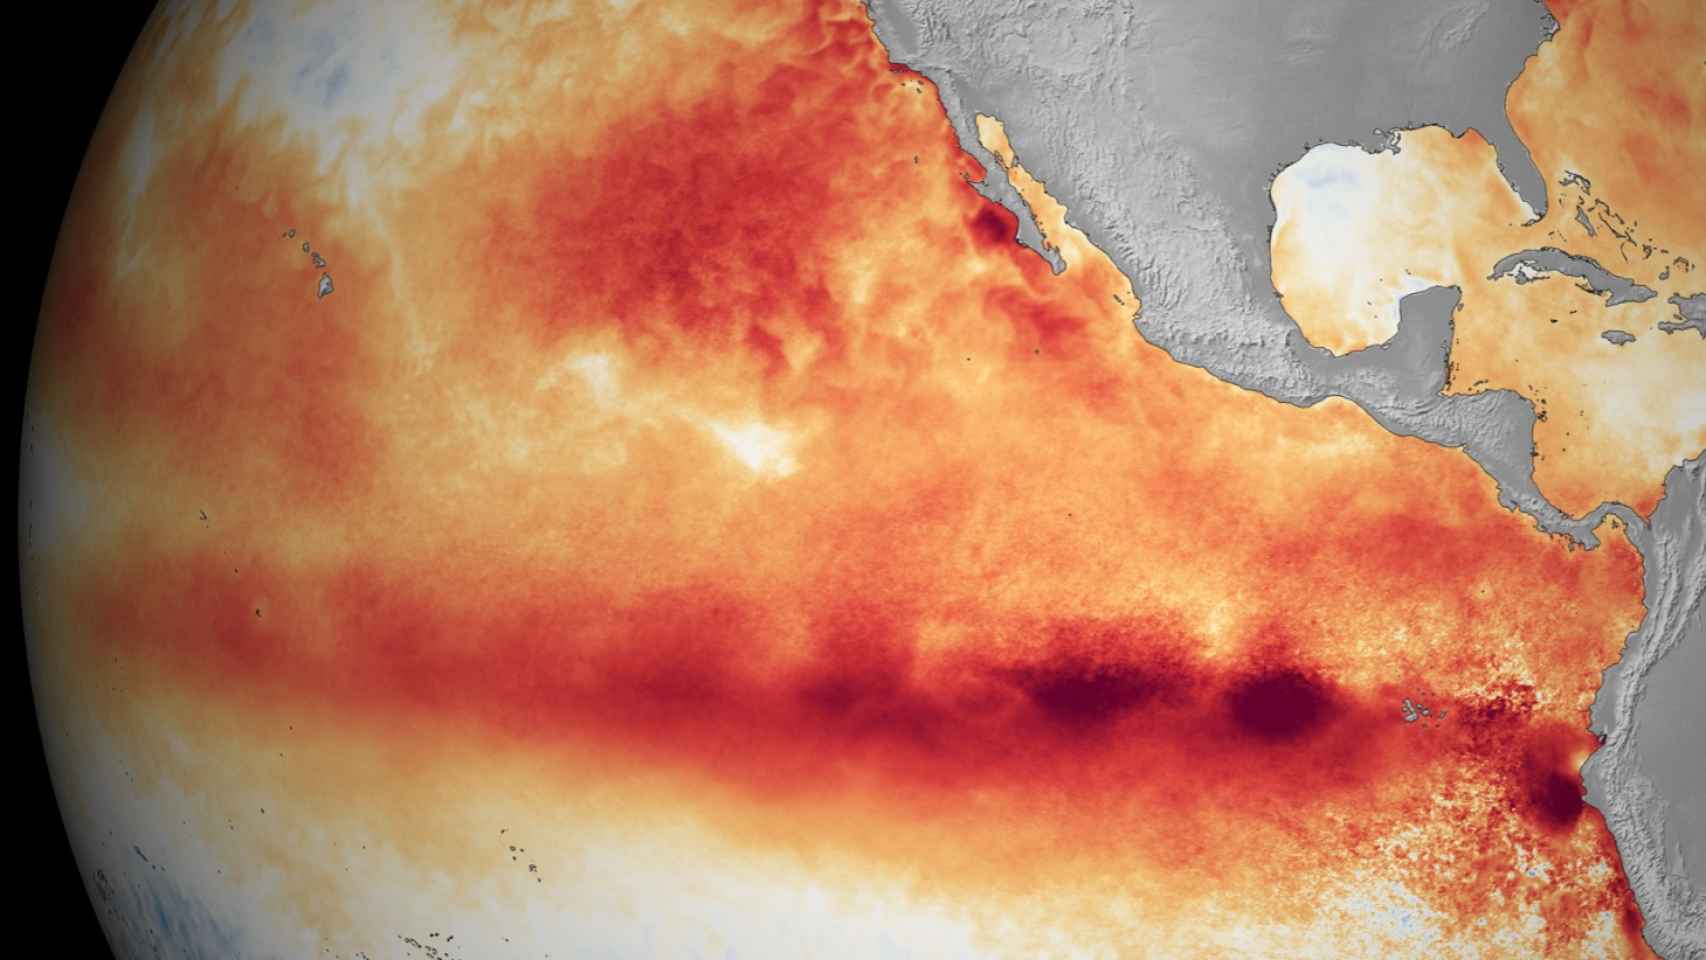 Océano Pacífico, En rojo, el aumento de temperatura causado por El Niño